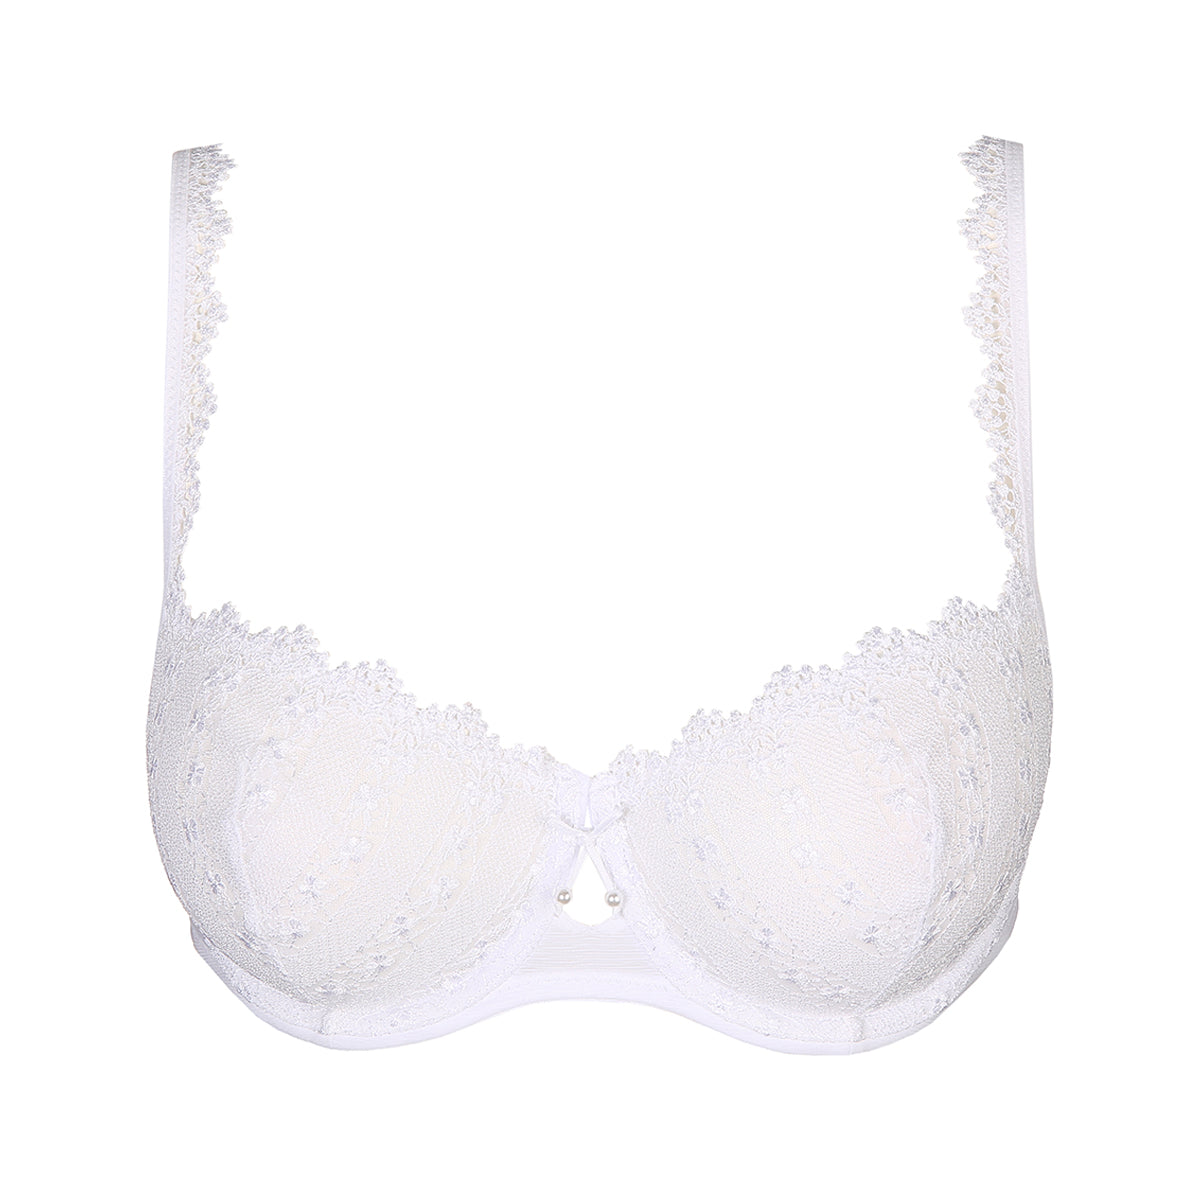 Chic Line embroidered white demi-cup bra